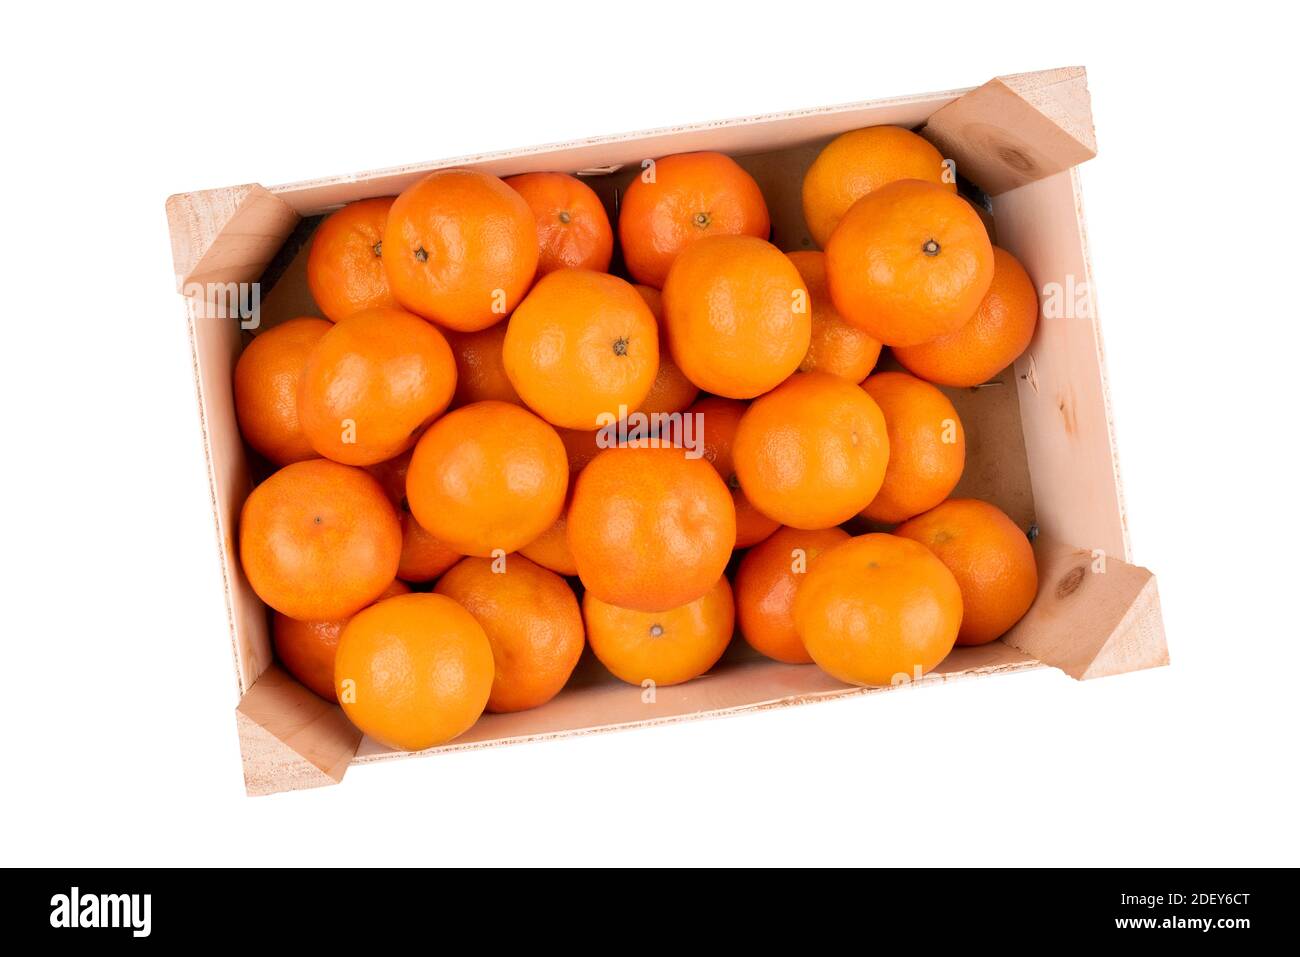 au-dessus de la vue d'une caisse en bois remplie de tangerines ou de clémentines isolé sur fond blanc Banque D'Images